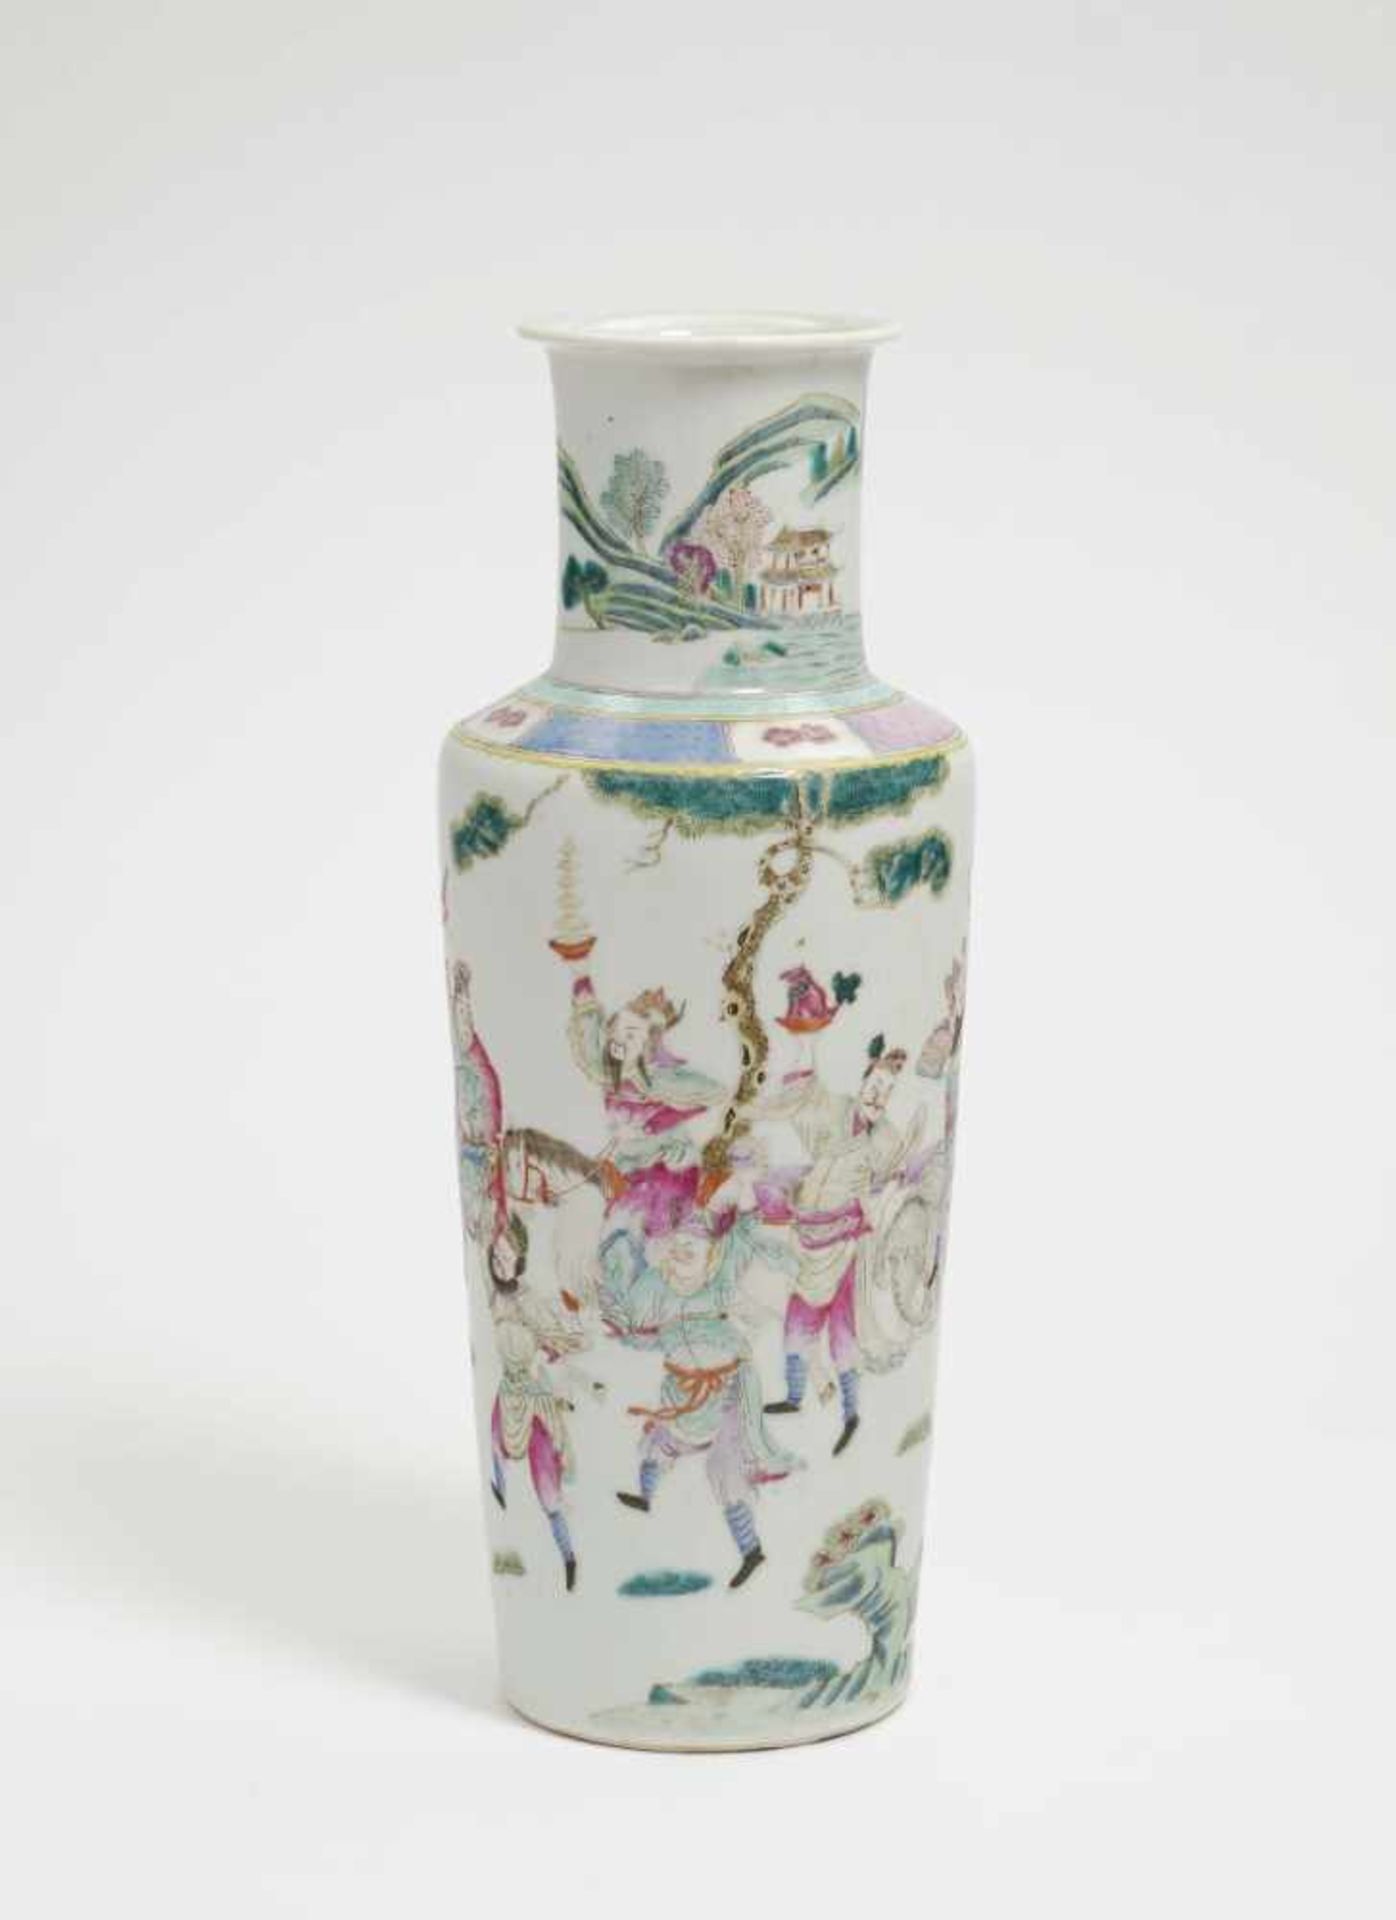 Rouleau-Vase China Porzellan. Bunter Emailfarbendekor: Feiernde Gesellschaft im Park. Rote